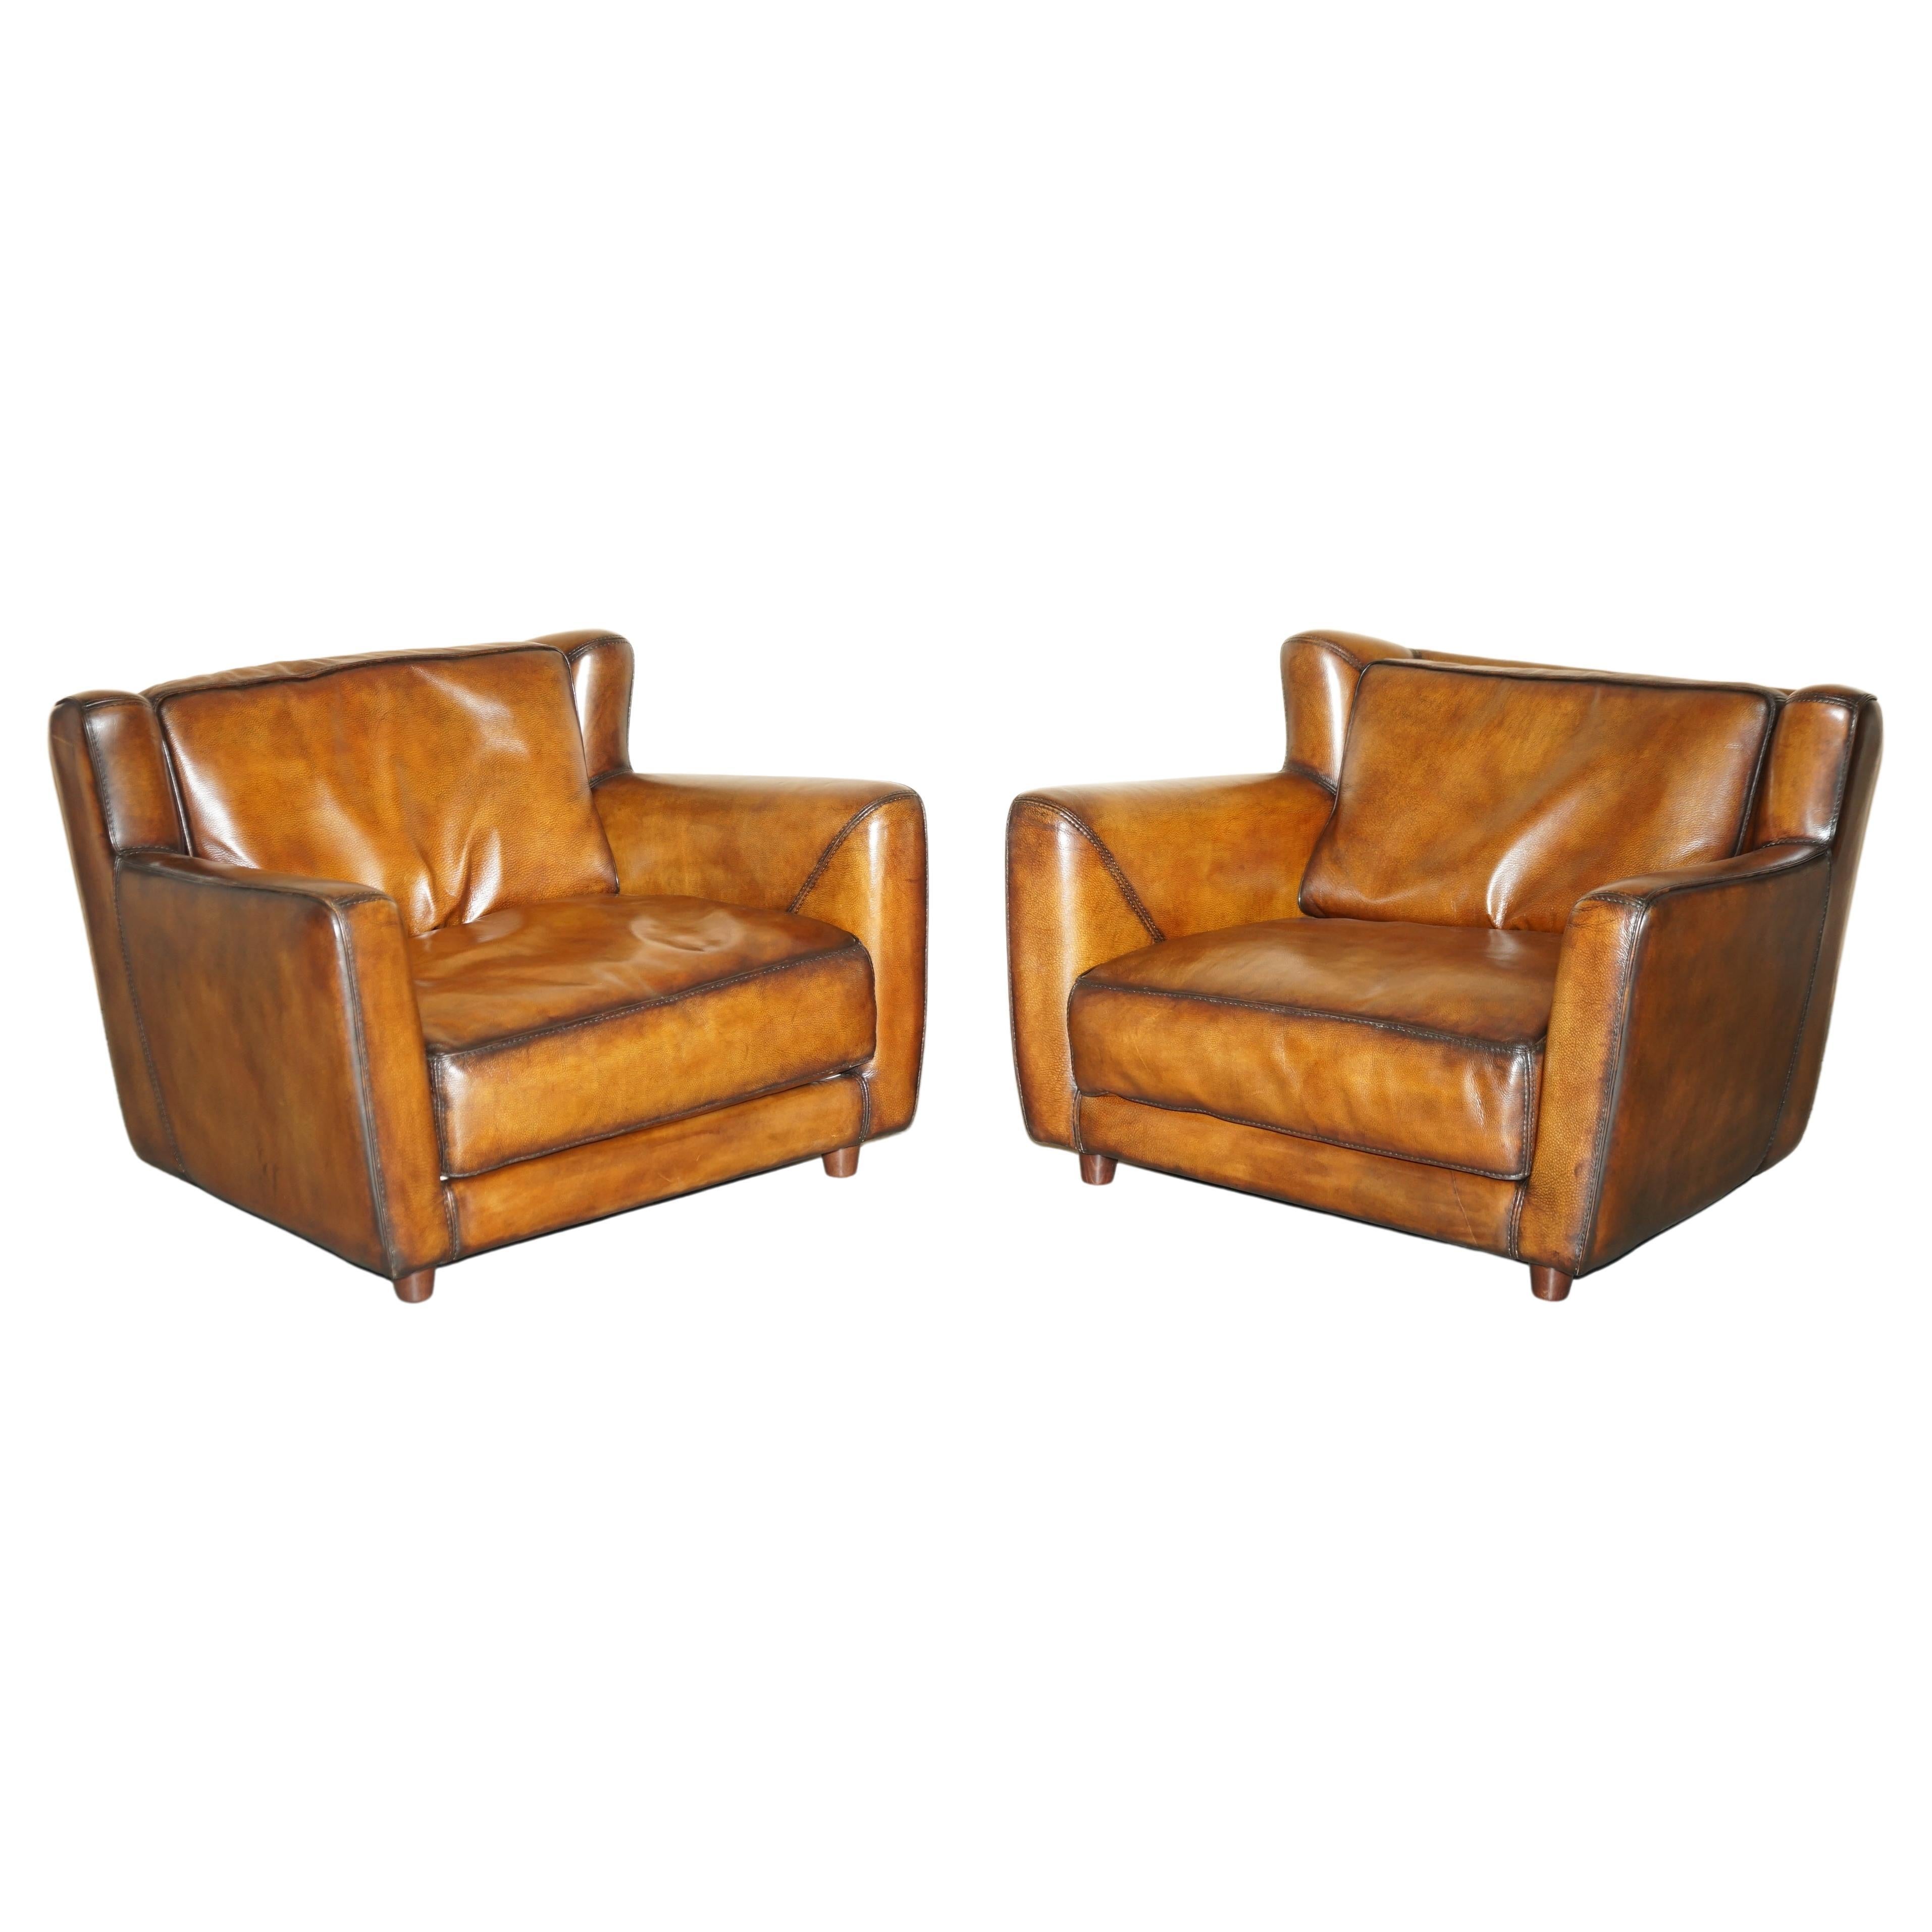 Paire de fauteuils Love Seat en cuir Baxter Bergere, teint à la main, couleur Cigar Brown, restaurés